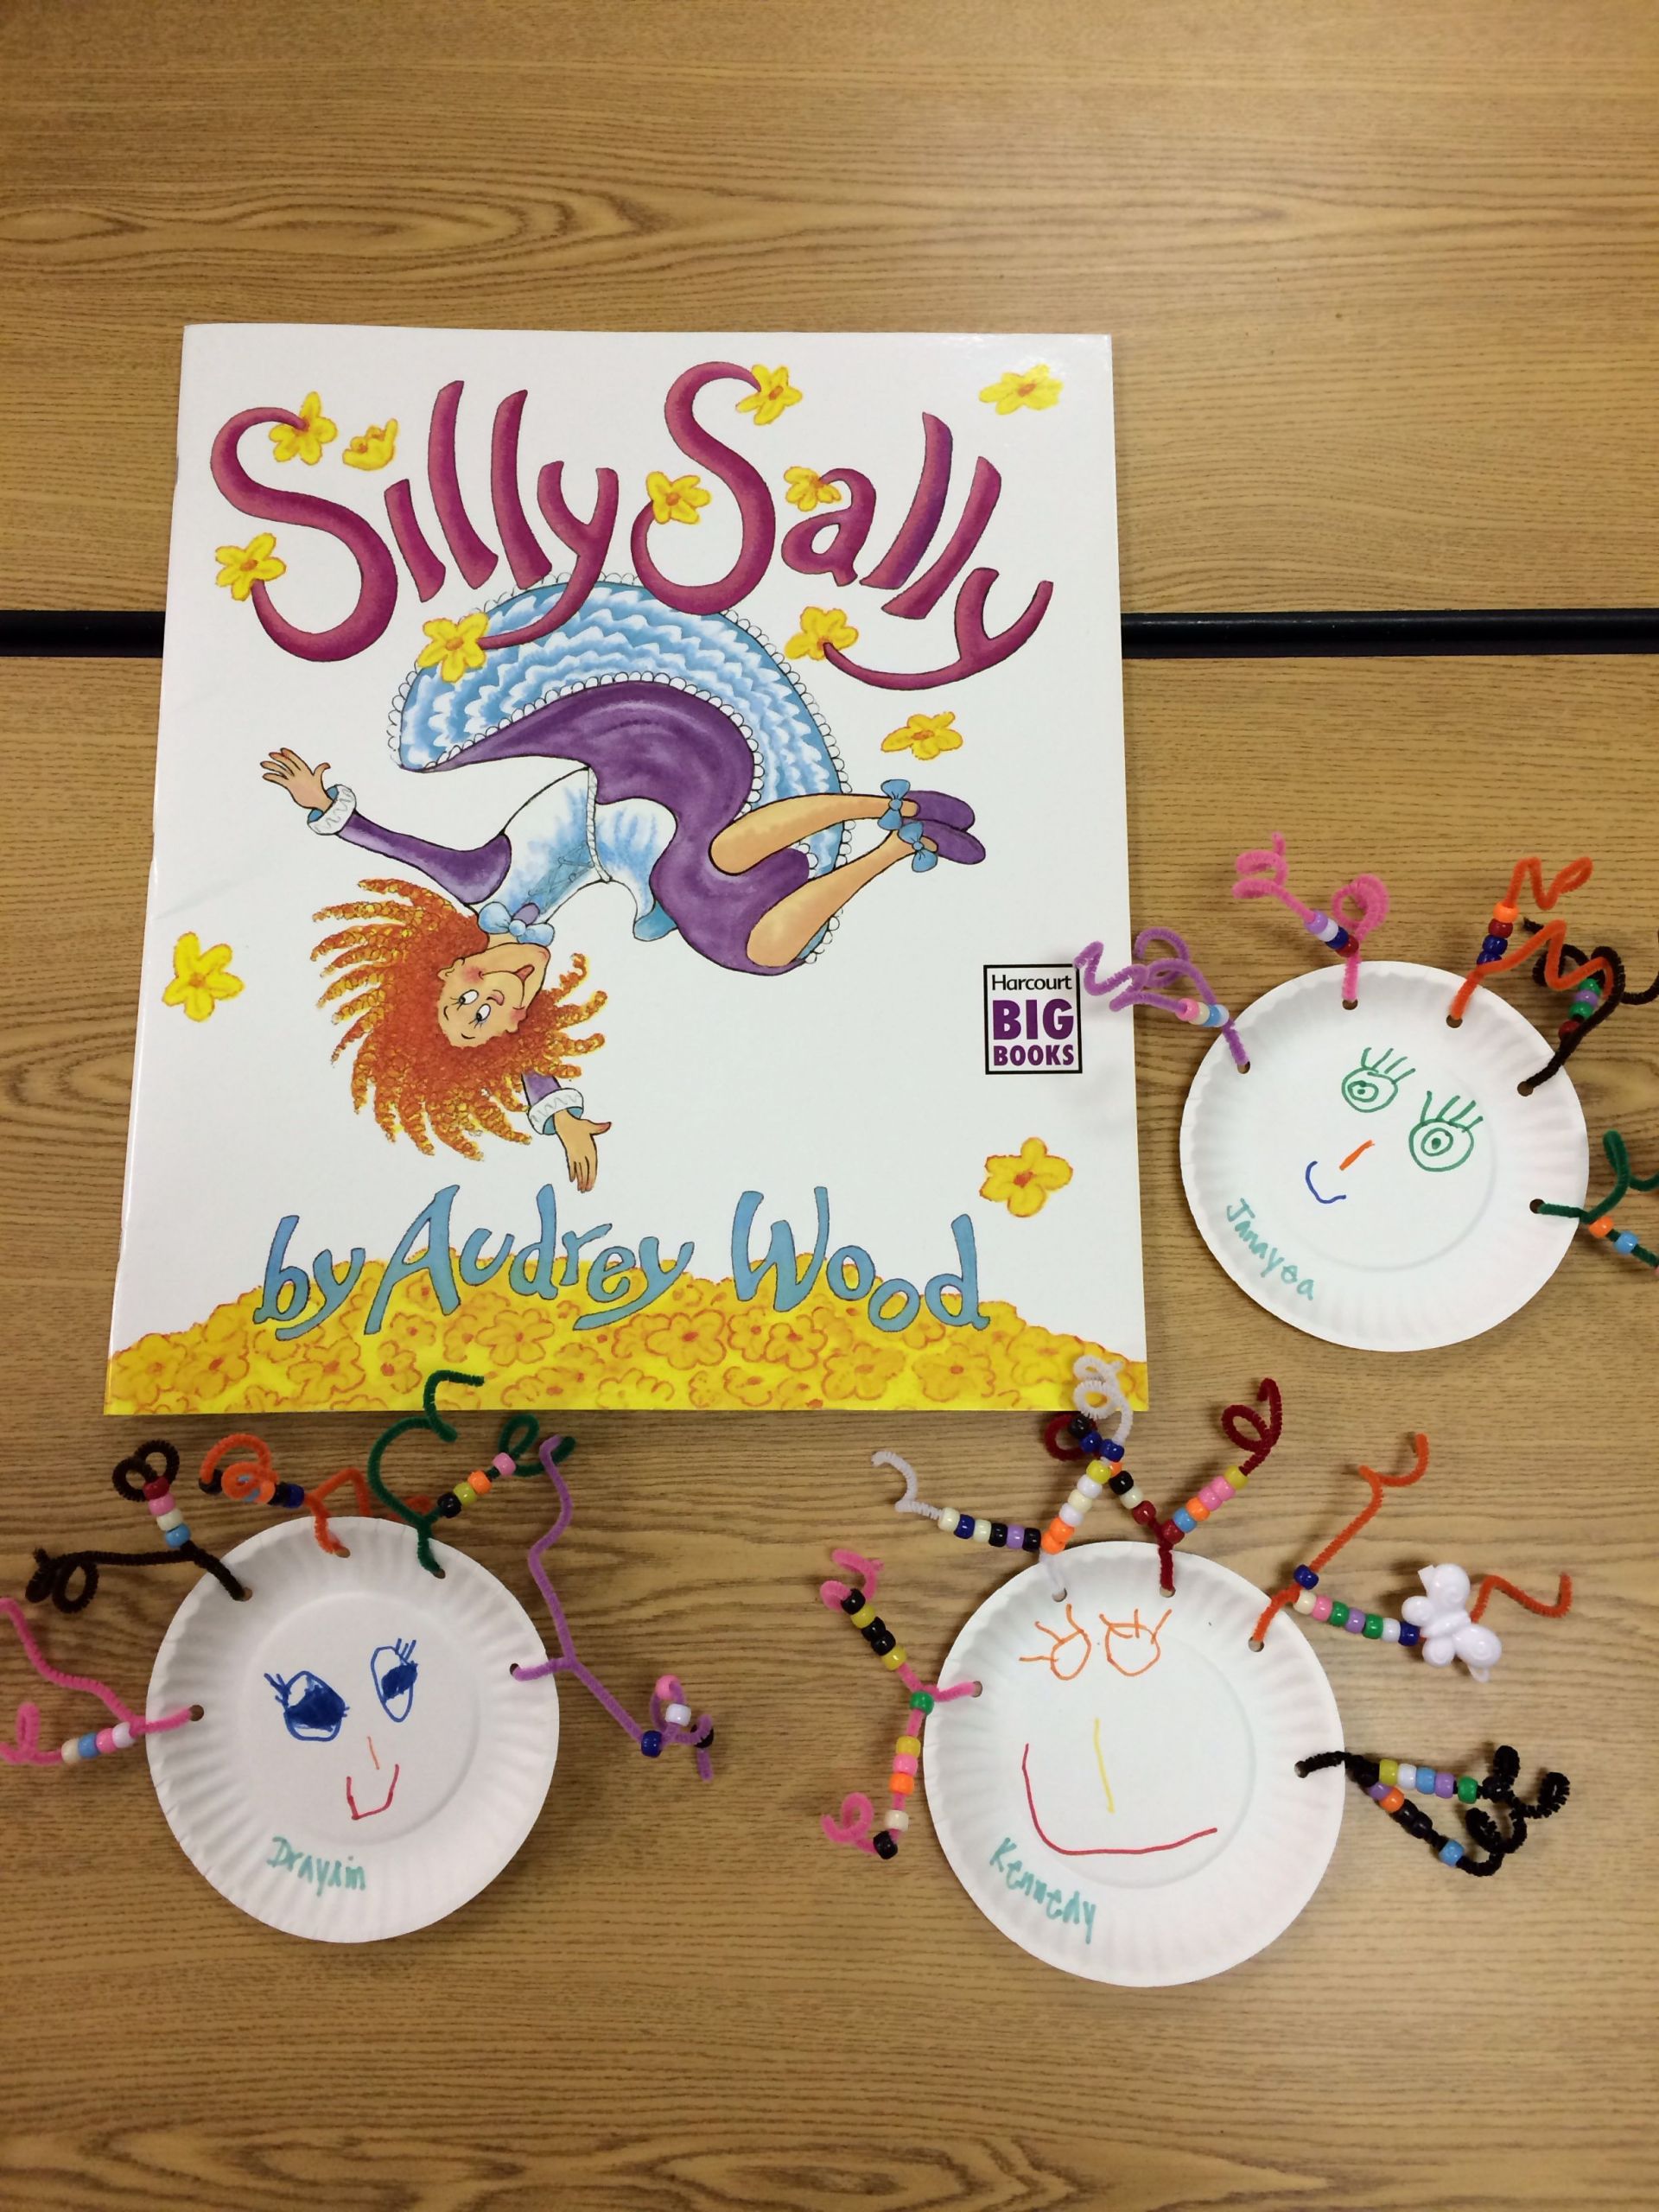 Craft Activities For Preschoolers
 Silly Sally preschool art project